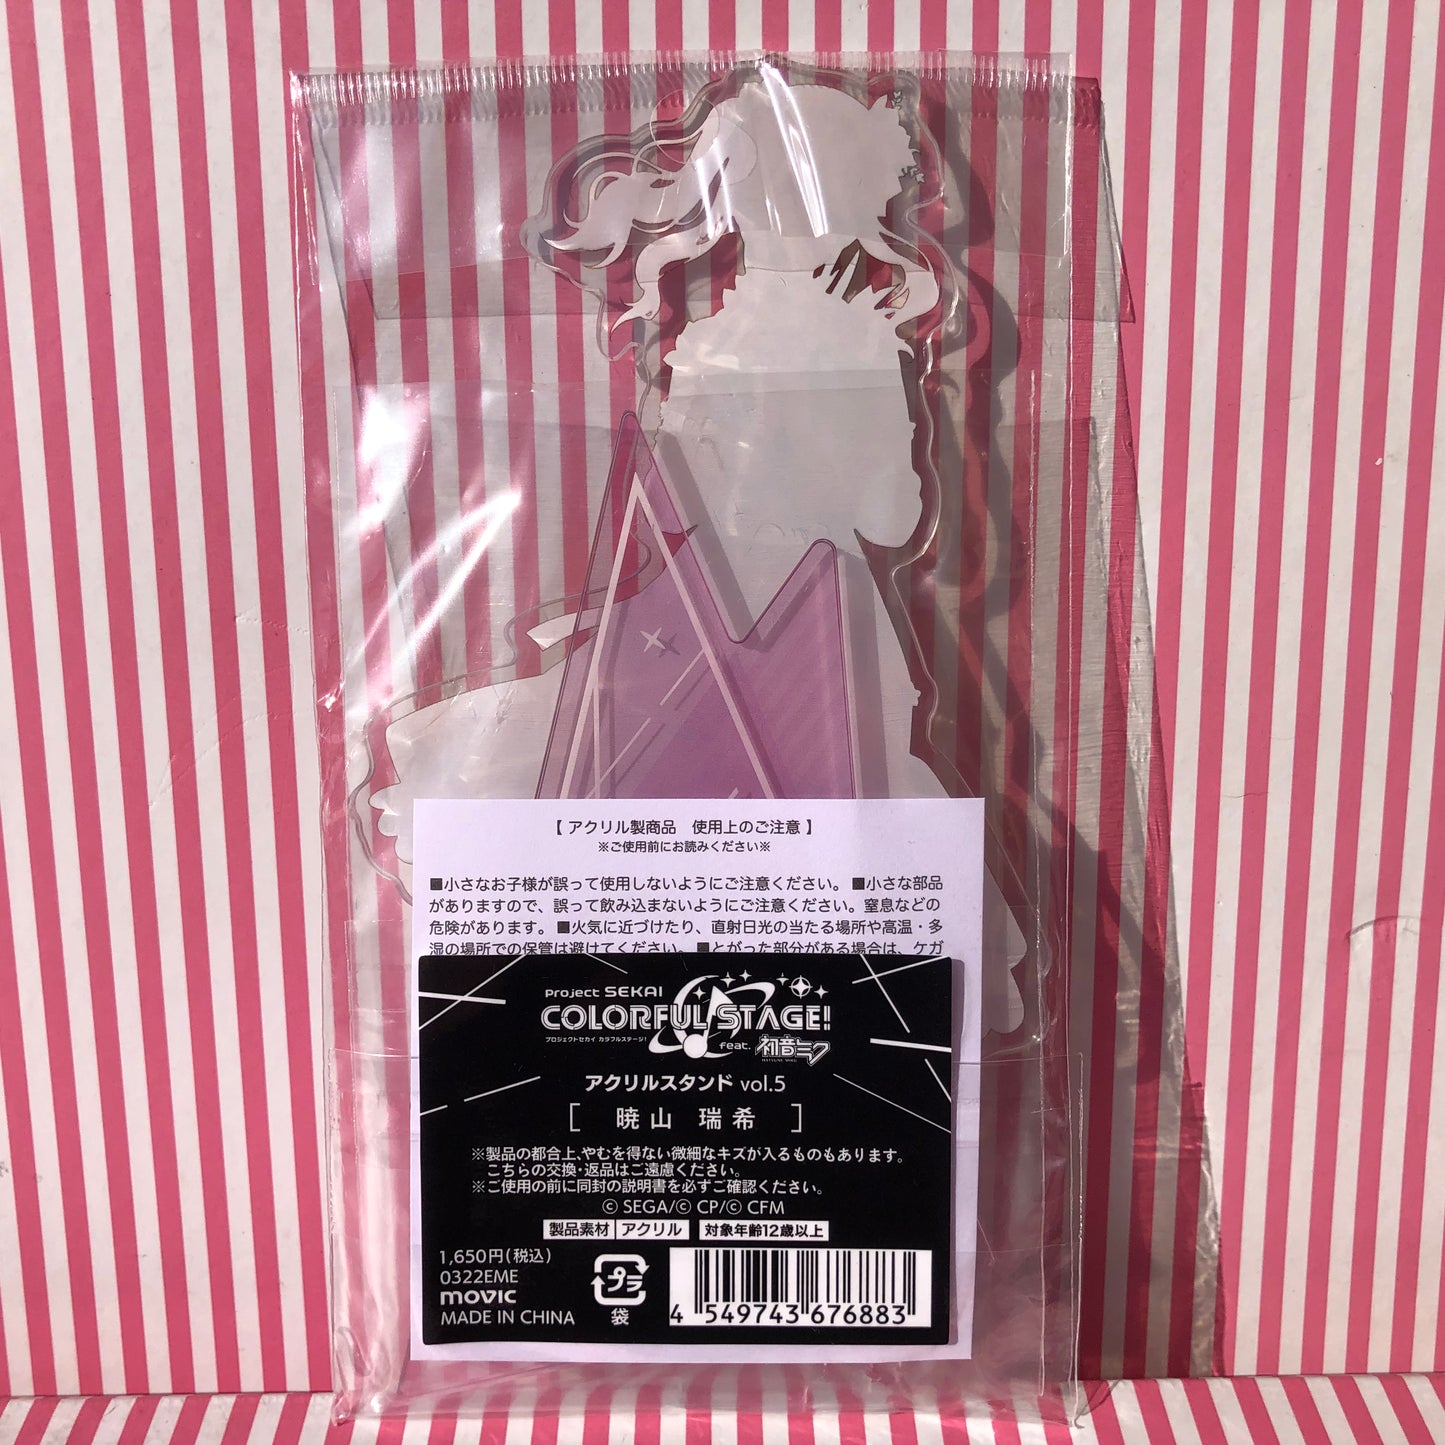 Akiyama Mizuki Acrylic Stand - Project Sekai Colorful Stage! ft. Hatsune Miku Vol.5